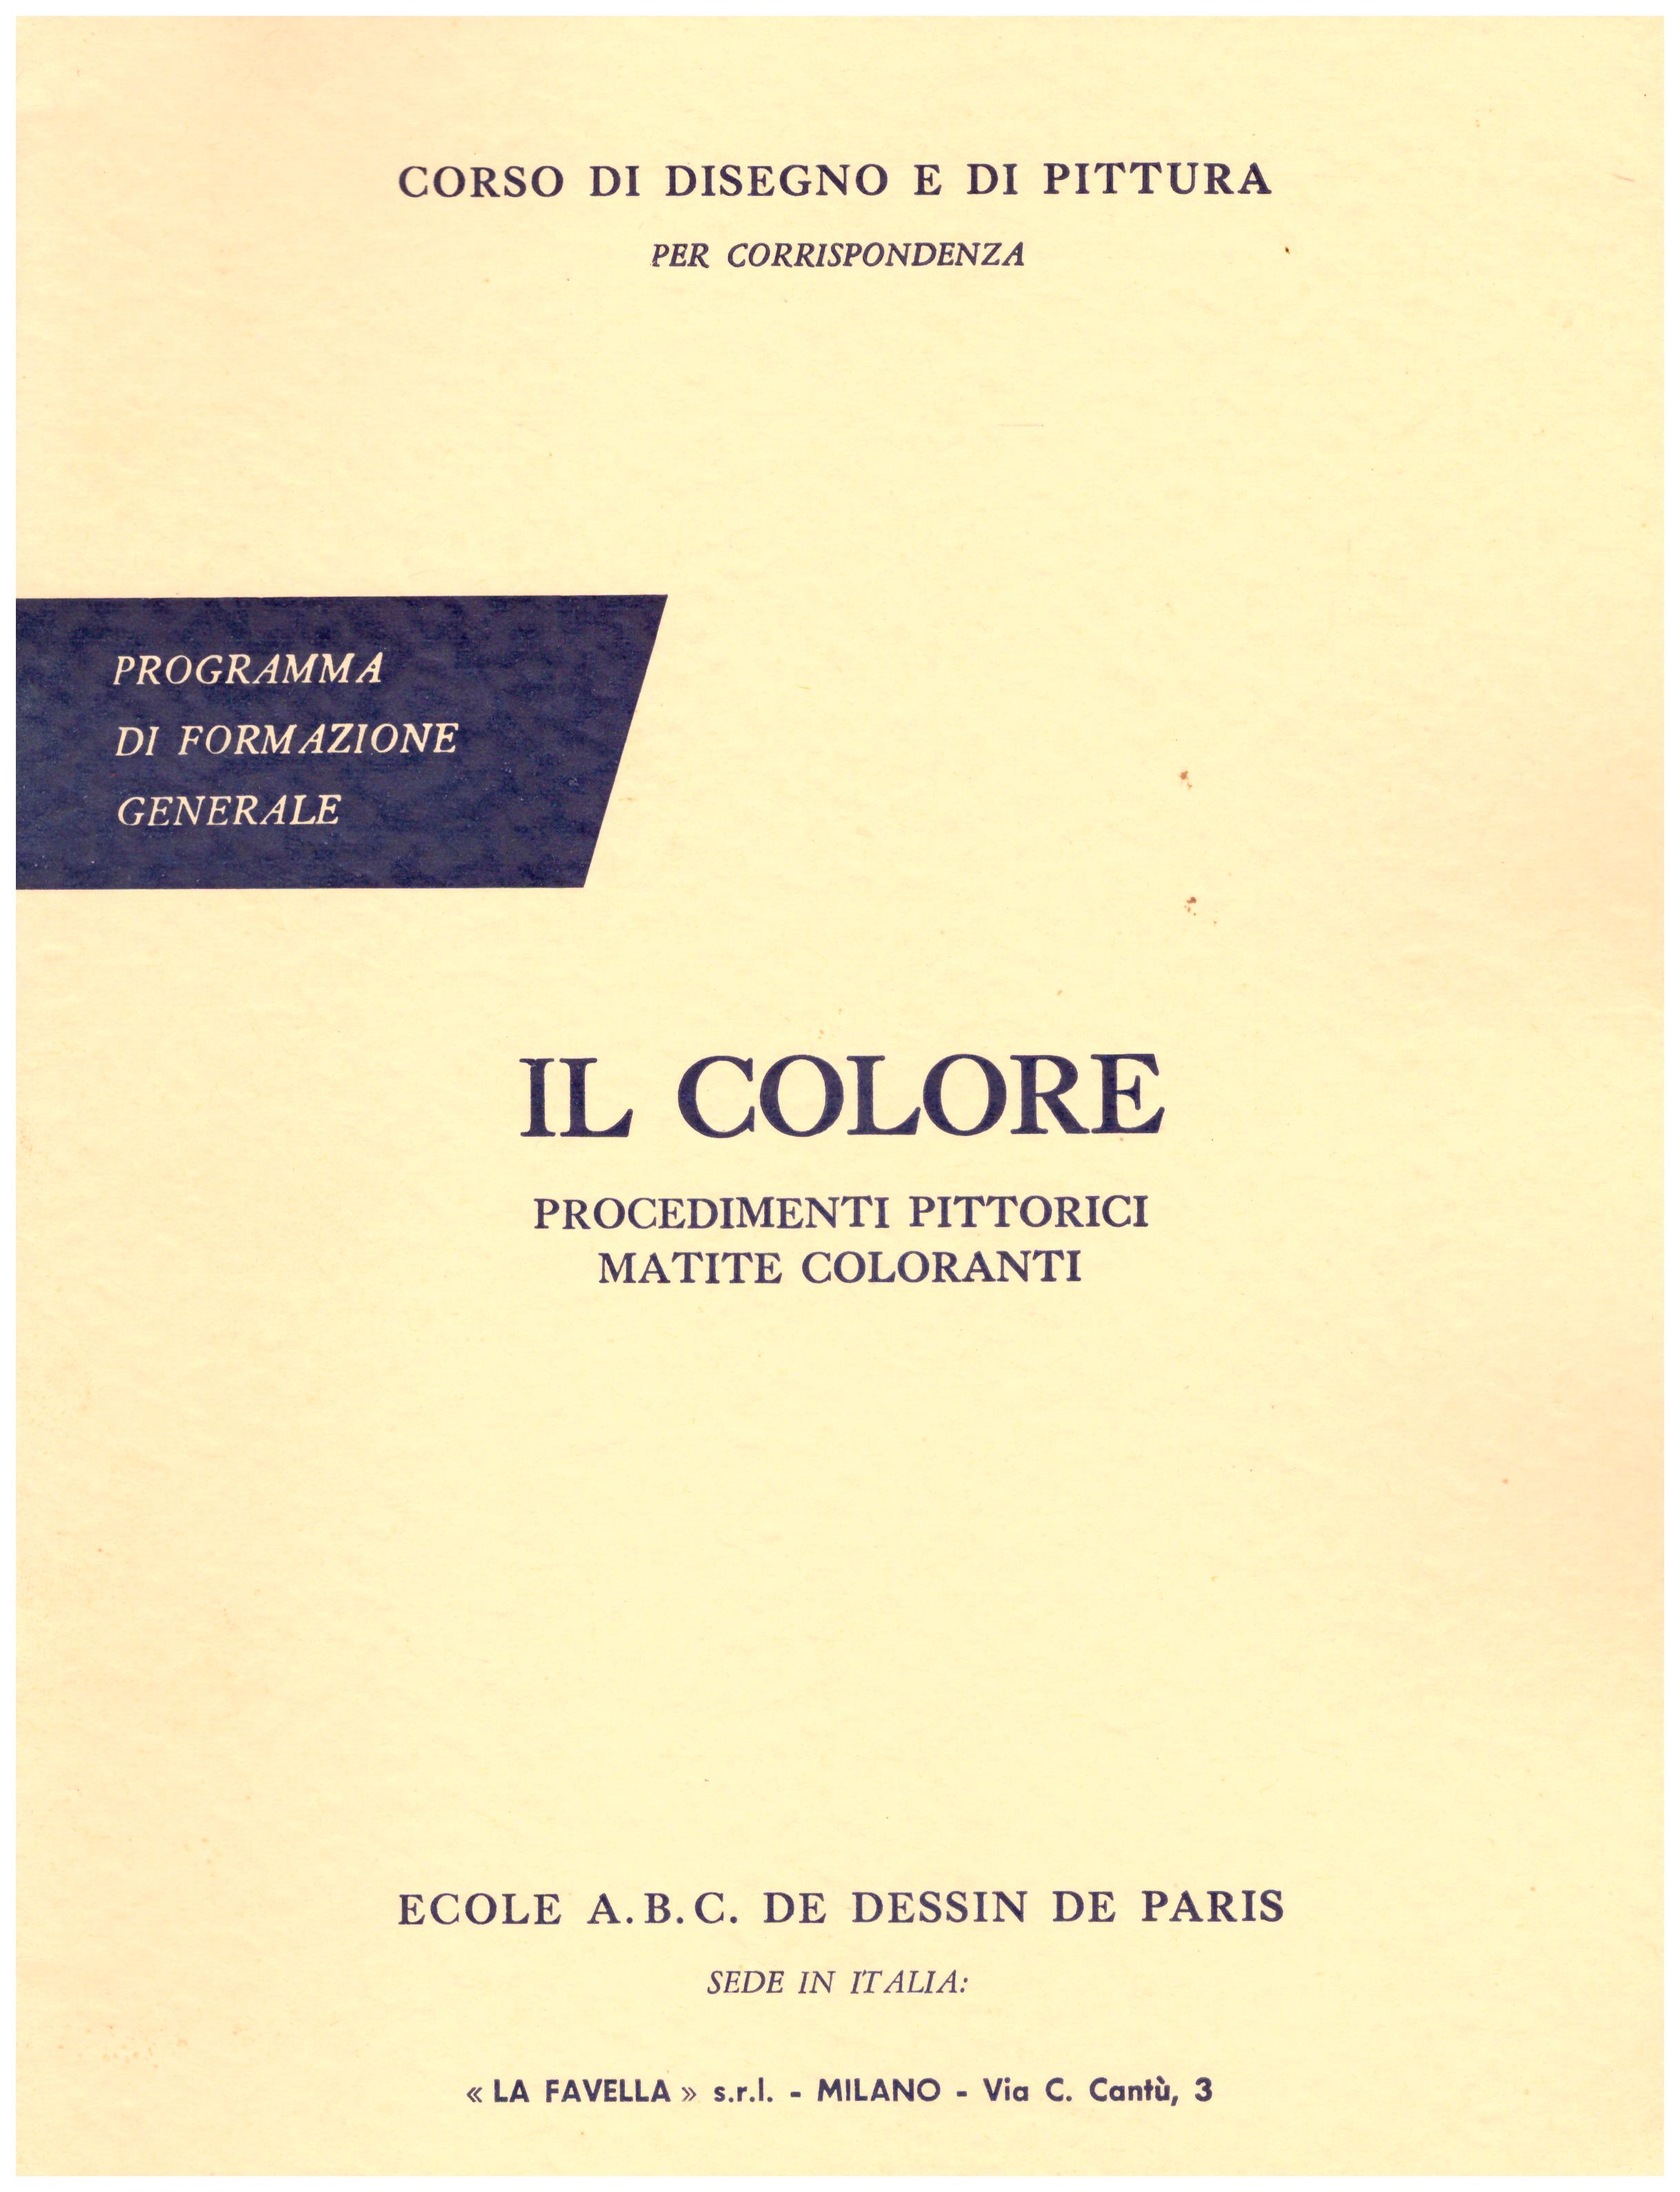 Titolo: Corso di disegno e pittura, il colore Autore: AA.VV.  Editore: Ecole A.B.C. de dessin de Paris sede in Italia: La Favella, Milano 1962